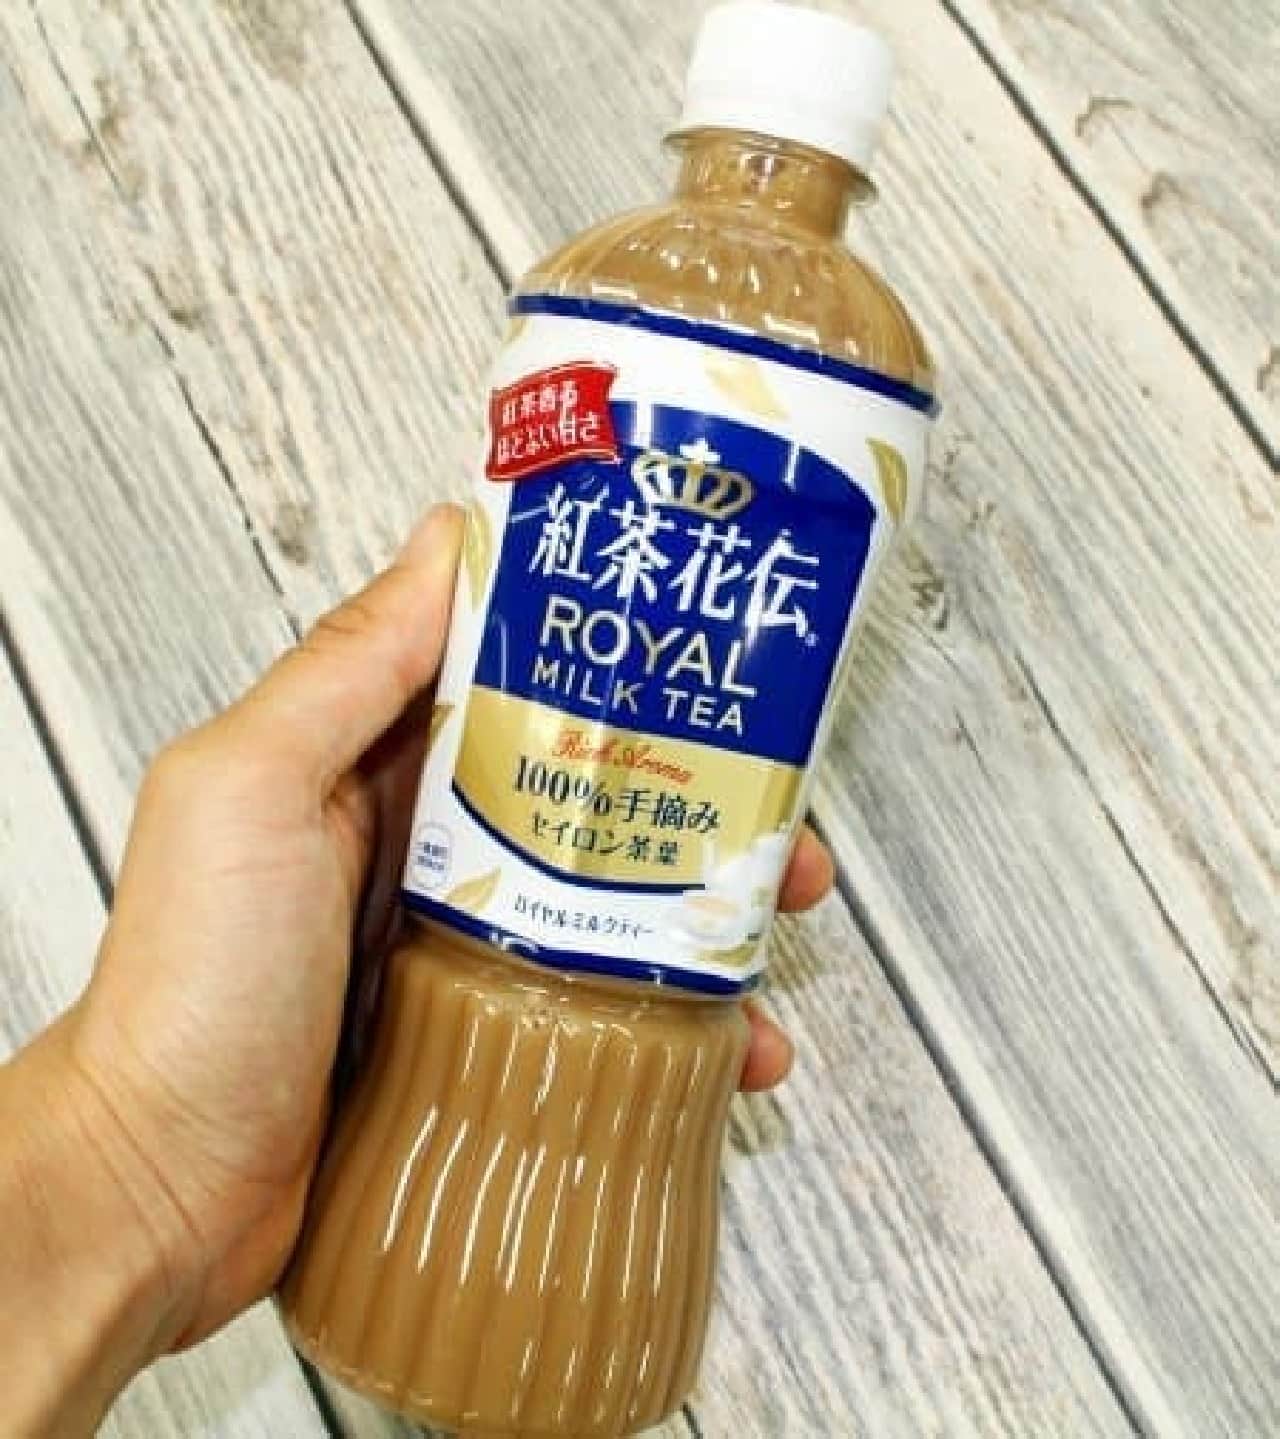 コカ・コーラ「紅茶花伝 ロイヤルミルクティー」